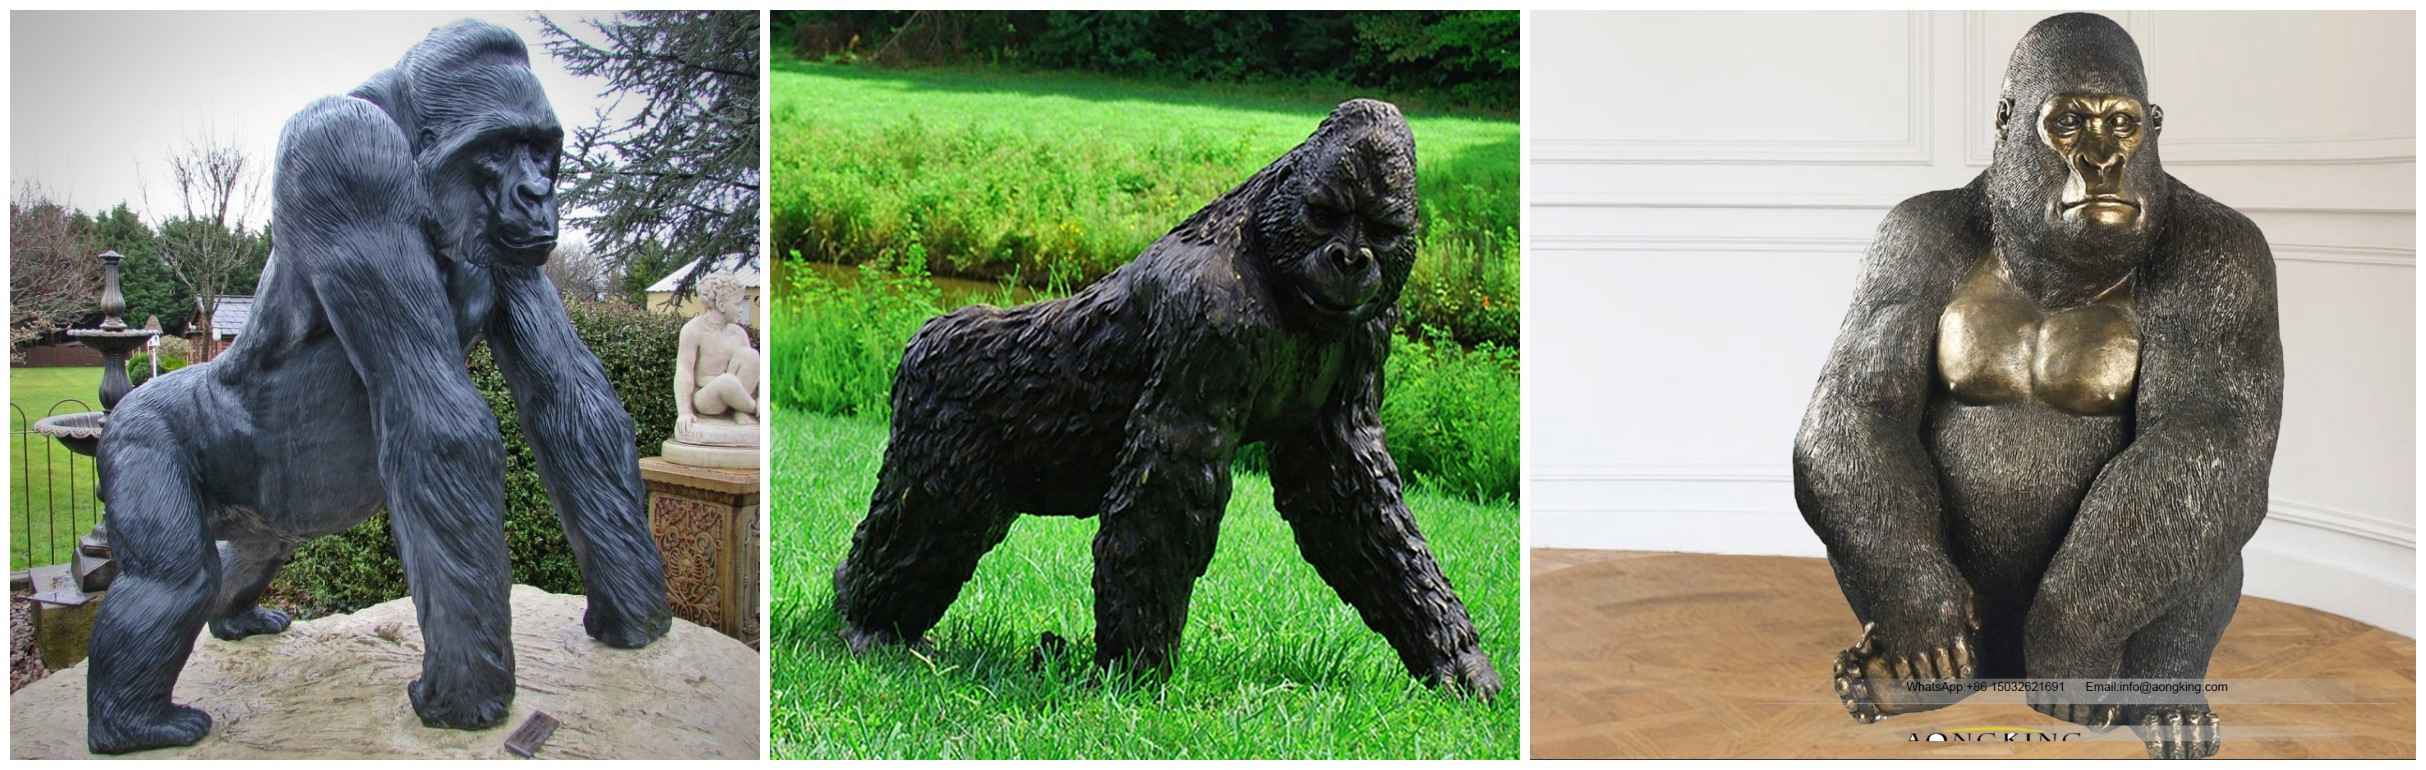 Ape Sculpture